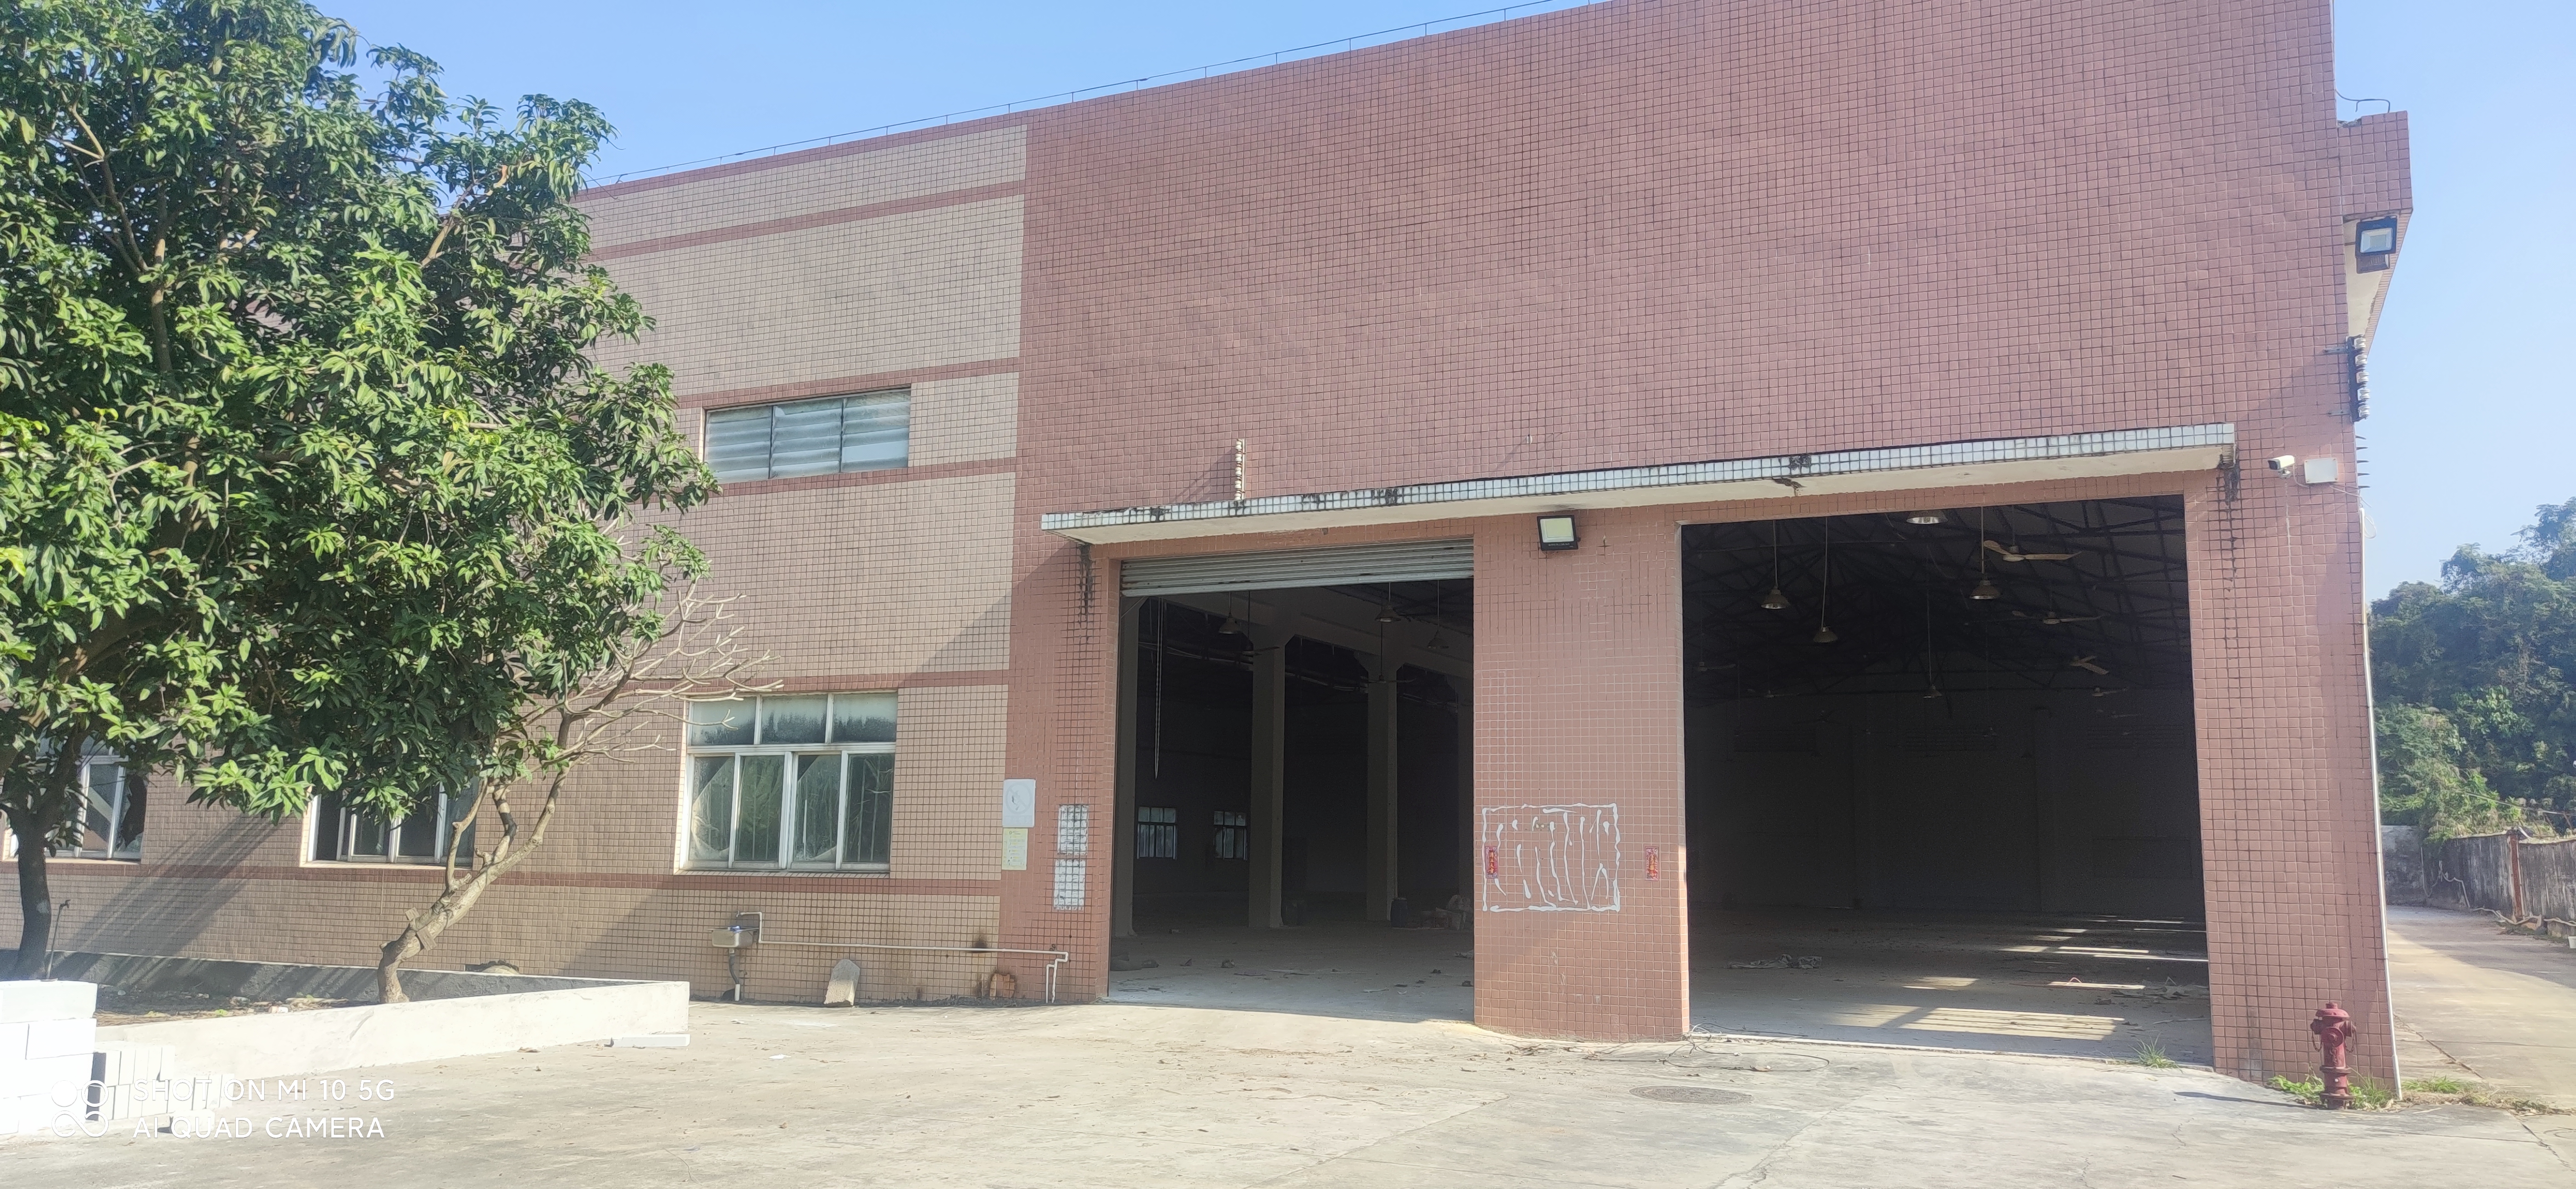 小榄镇全新高标准工字钢厂房仓库出租5600方租金只要15元。